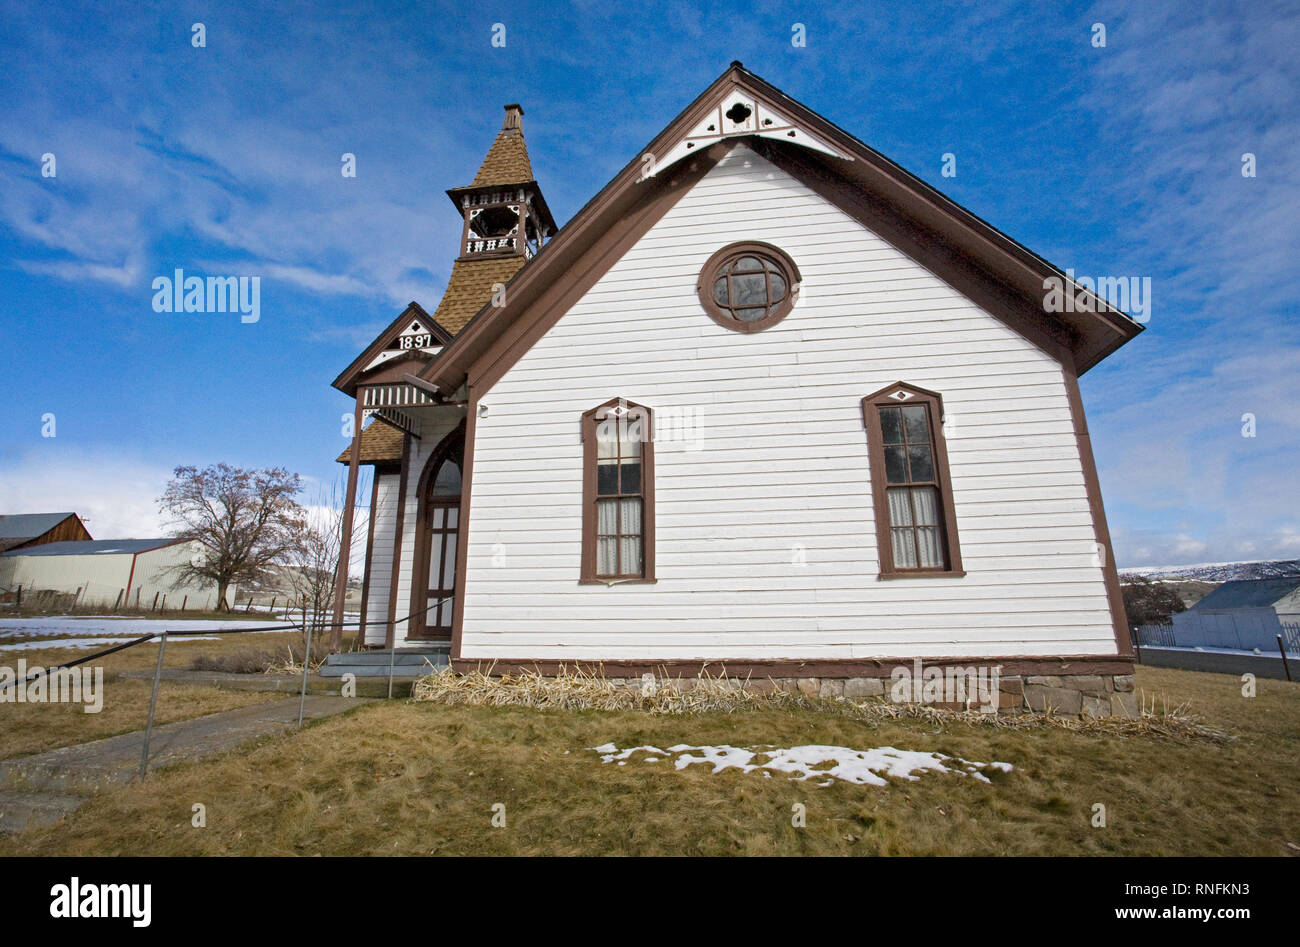 Die kleine Gemeinde Kirche in Antelope, Oregon, Bevölkerung 49. Anfang 1981 Antelope war die Basis Betrieb von Bhagwan Shree Rajneesh, einem indischen Stockfoto